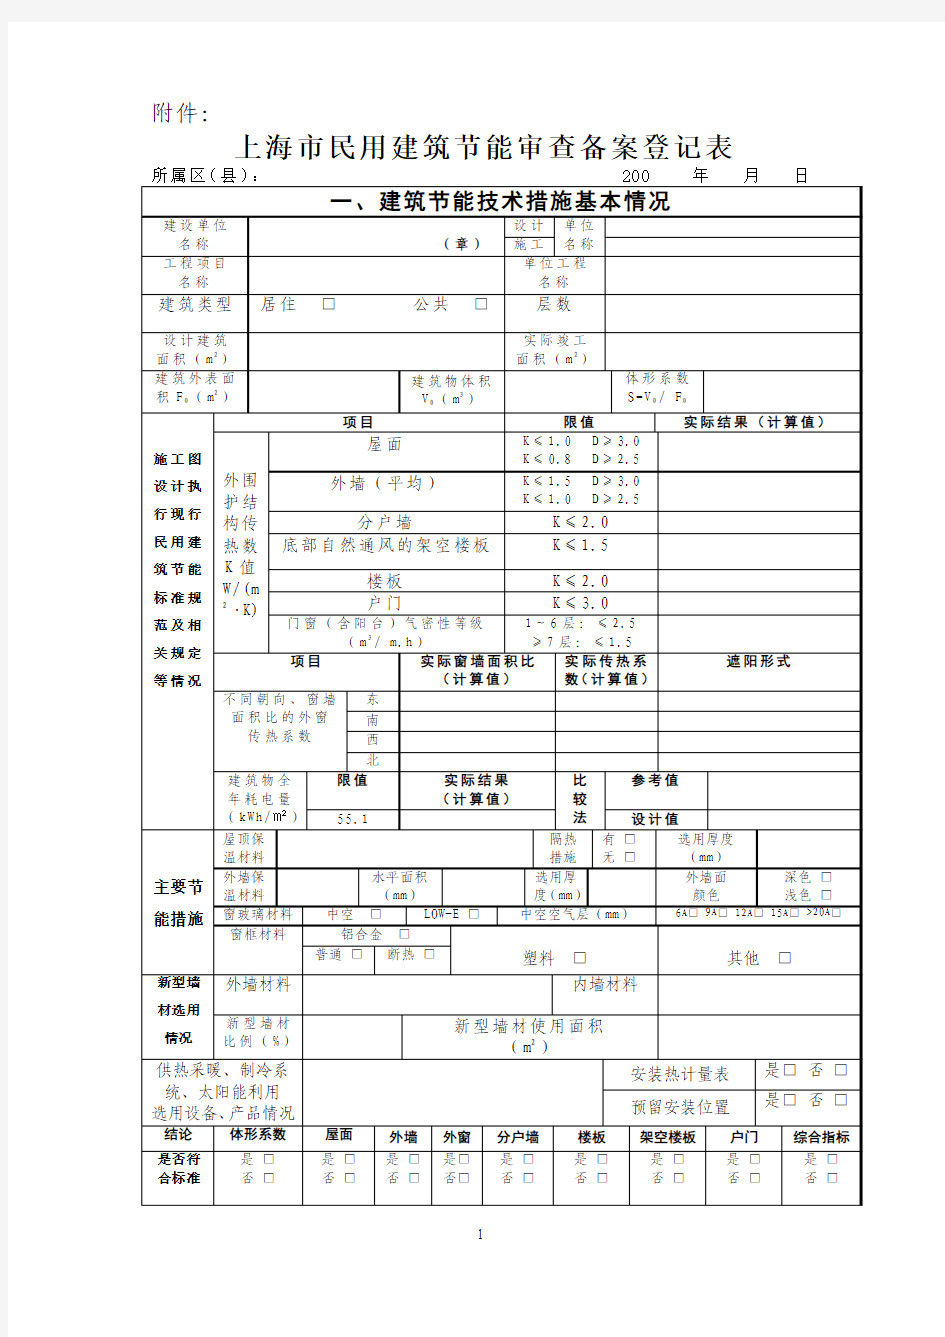 上海市民用建筑节能审查备案登记表